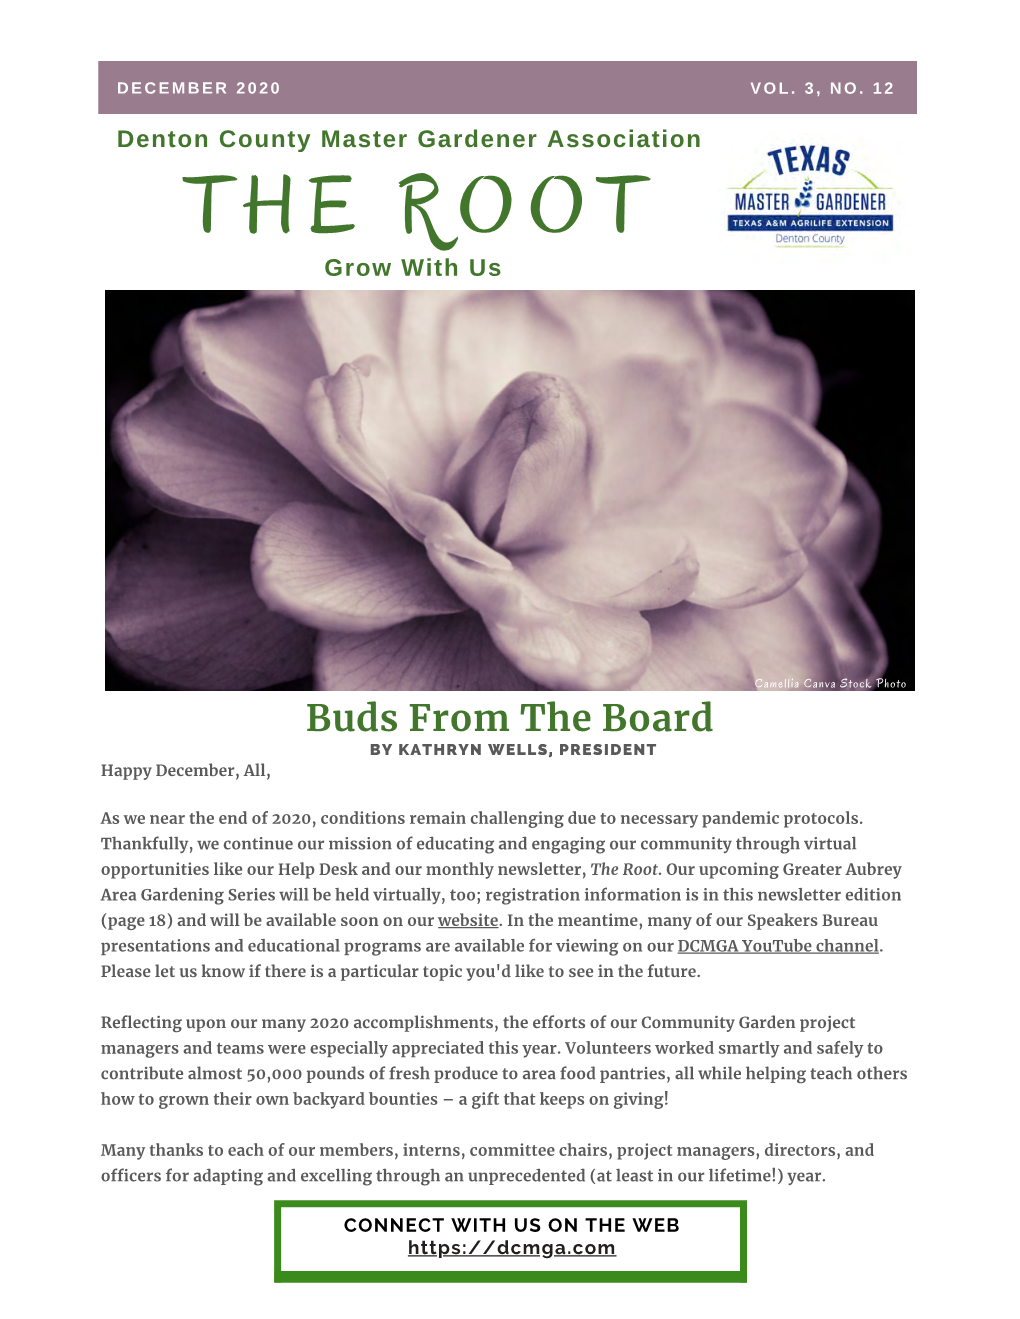 The Root December 2020 Newsletter